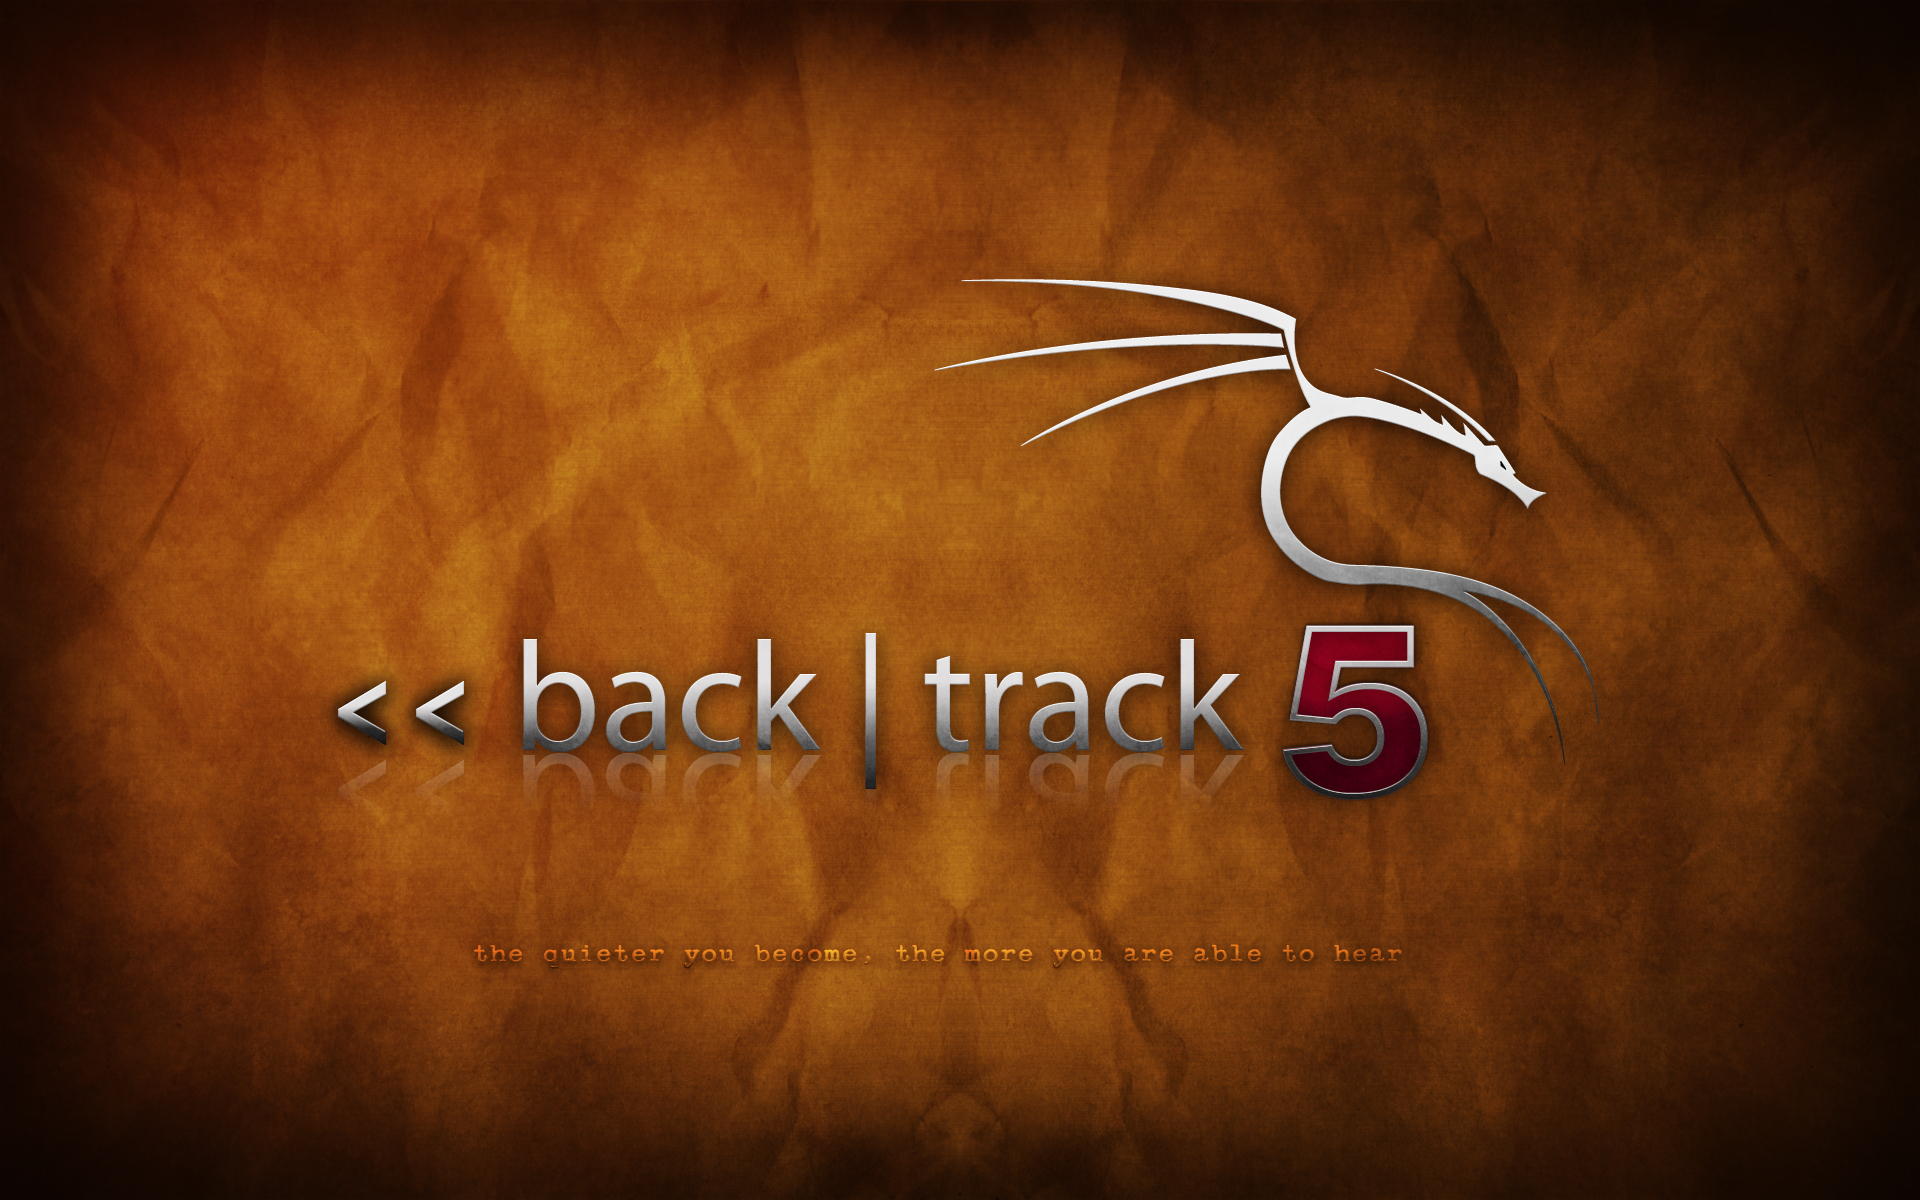 backtrack-5-orange-1.png